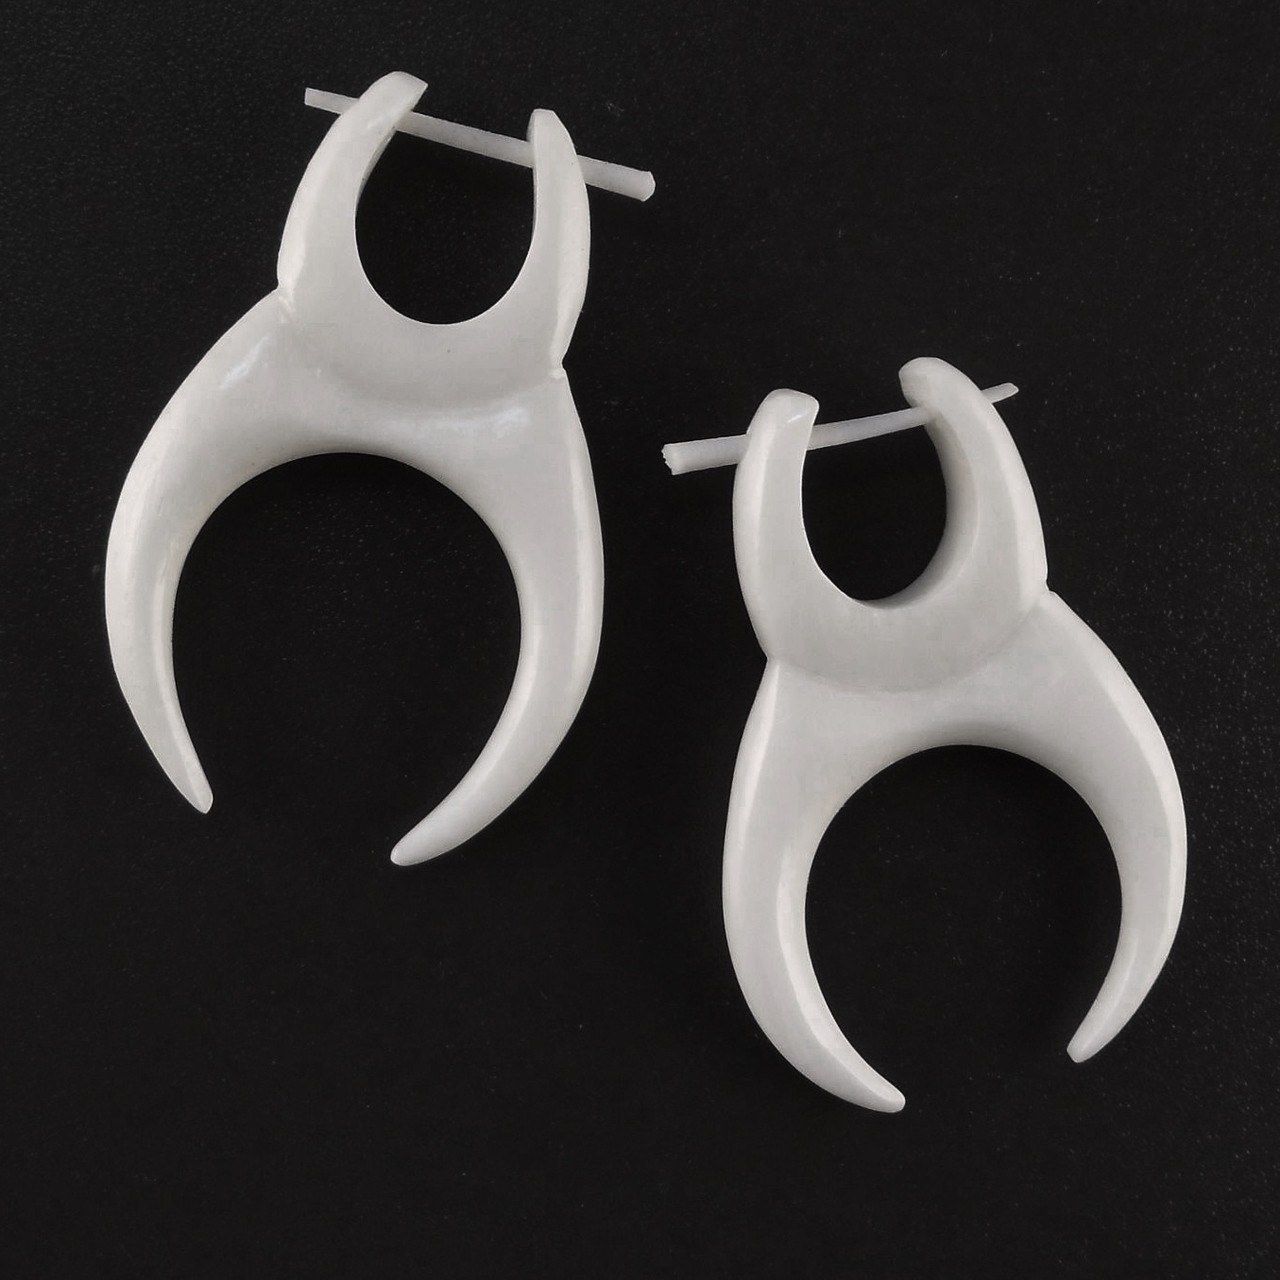 Tribal Earrings :|: Water Buffalo Bone Earrings, 1 inches W x 1 1/4 inches L. $22 | Boho Earrings